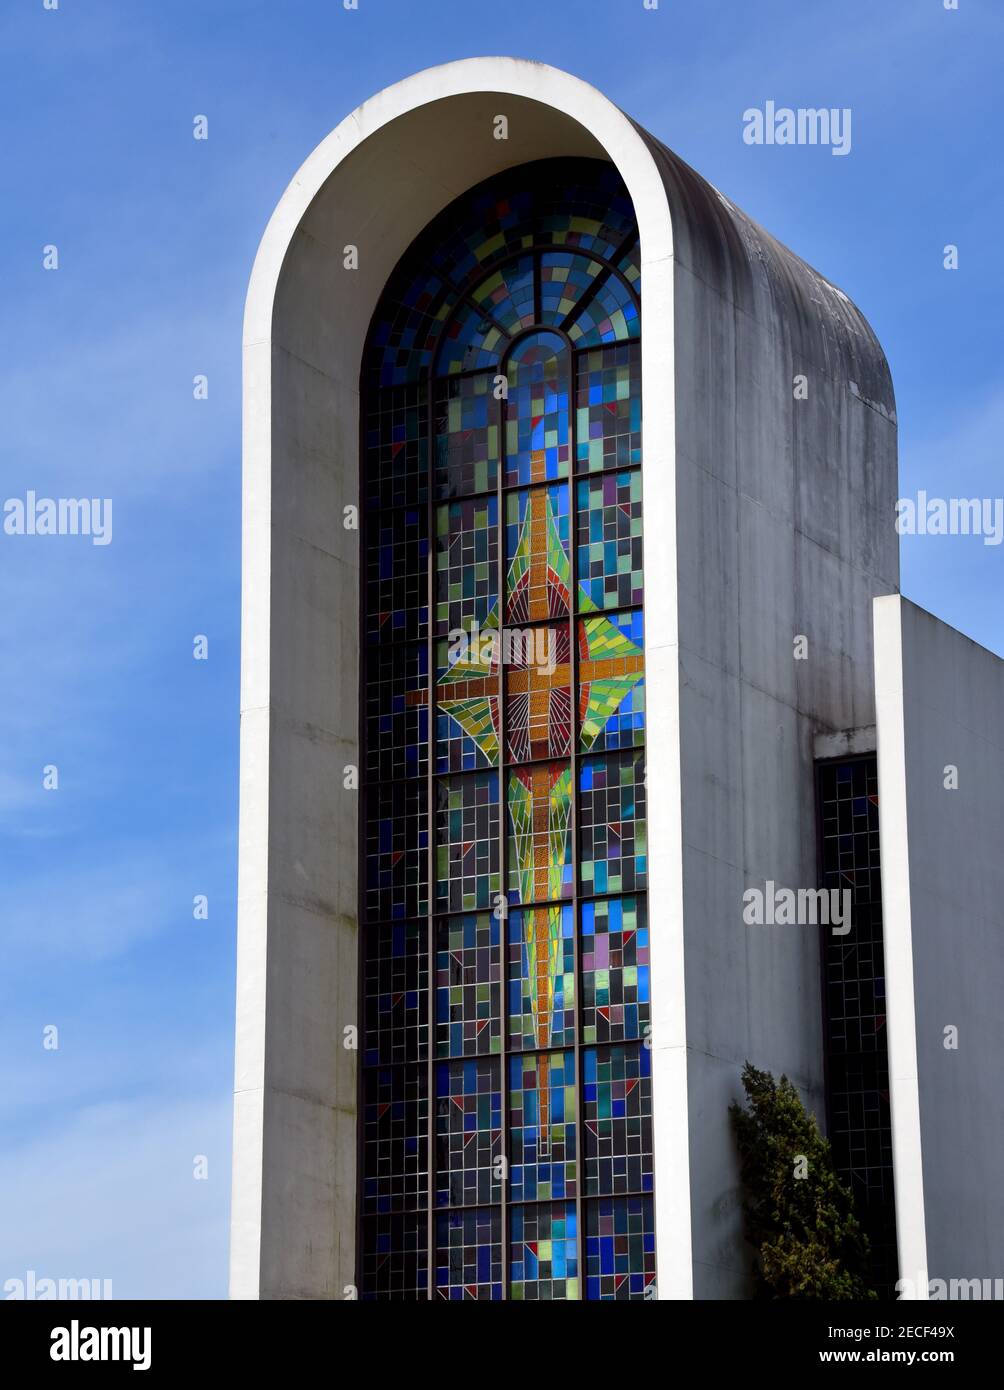 Iglesia bautista central fotografías e imágenes de alta resolución - Alamy